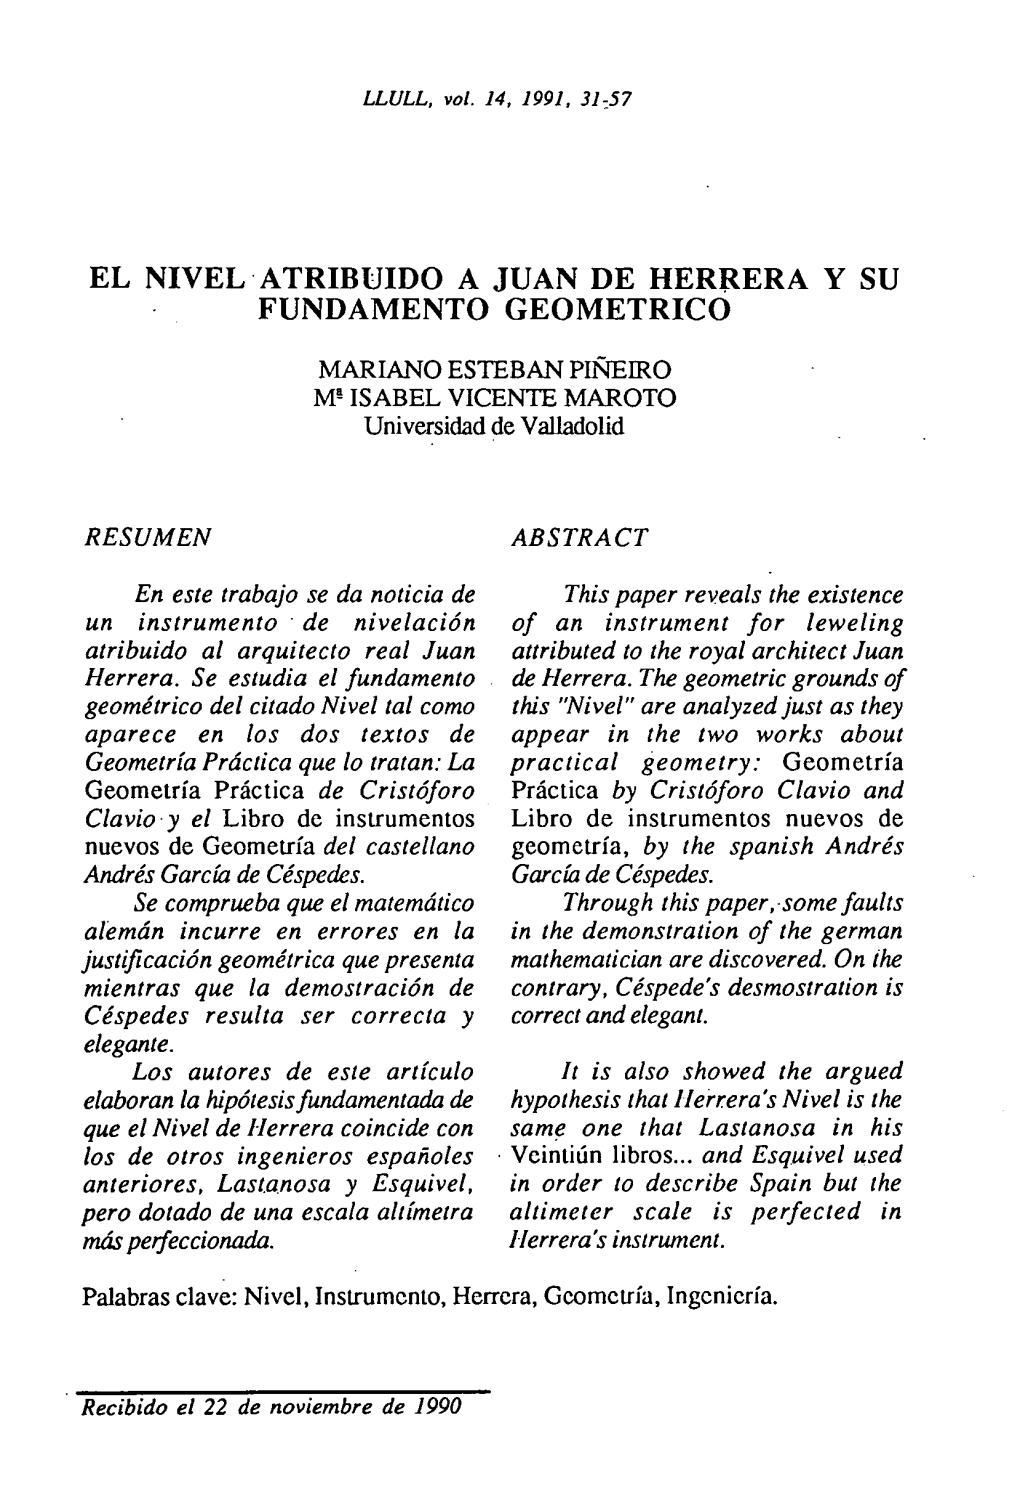 El Nivel Atribuido a Juan De Herrera Y Su Fundamento Geometrico